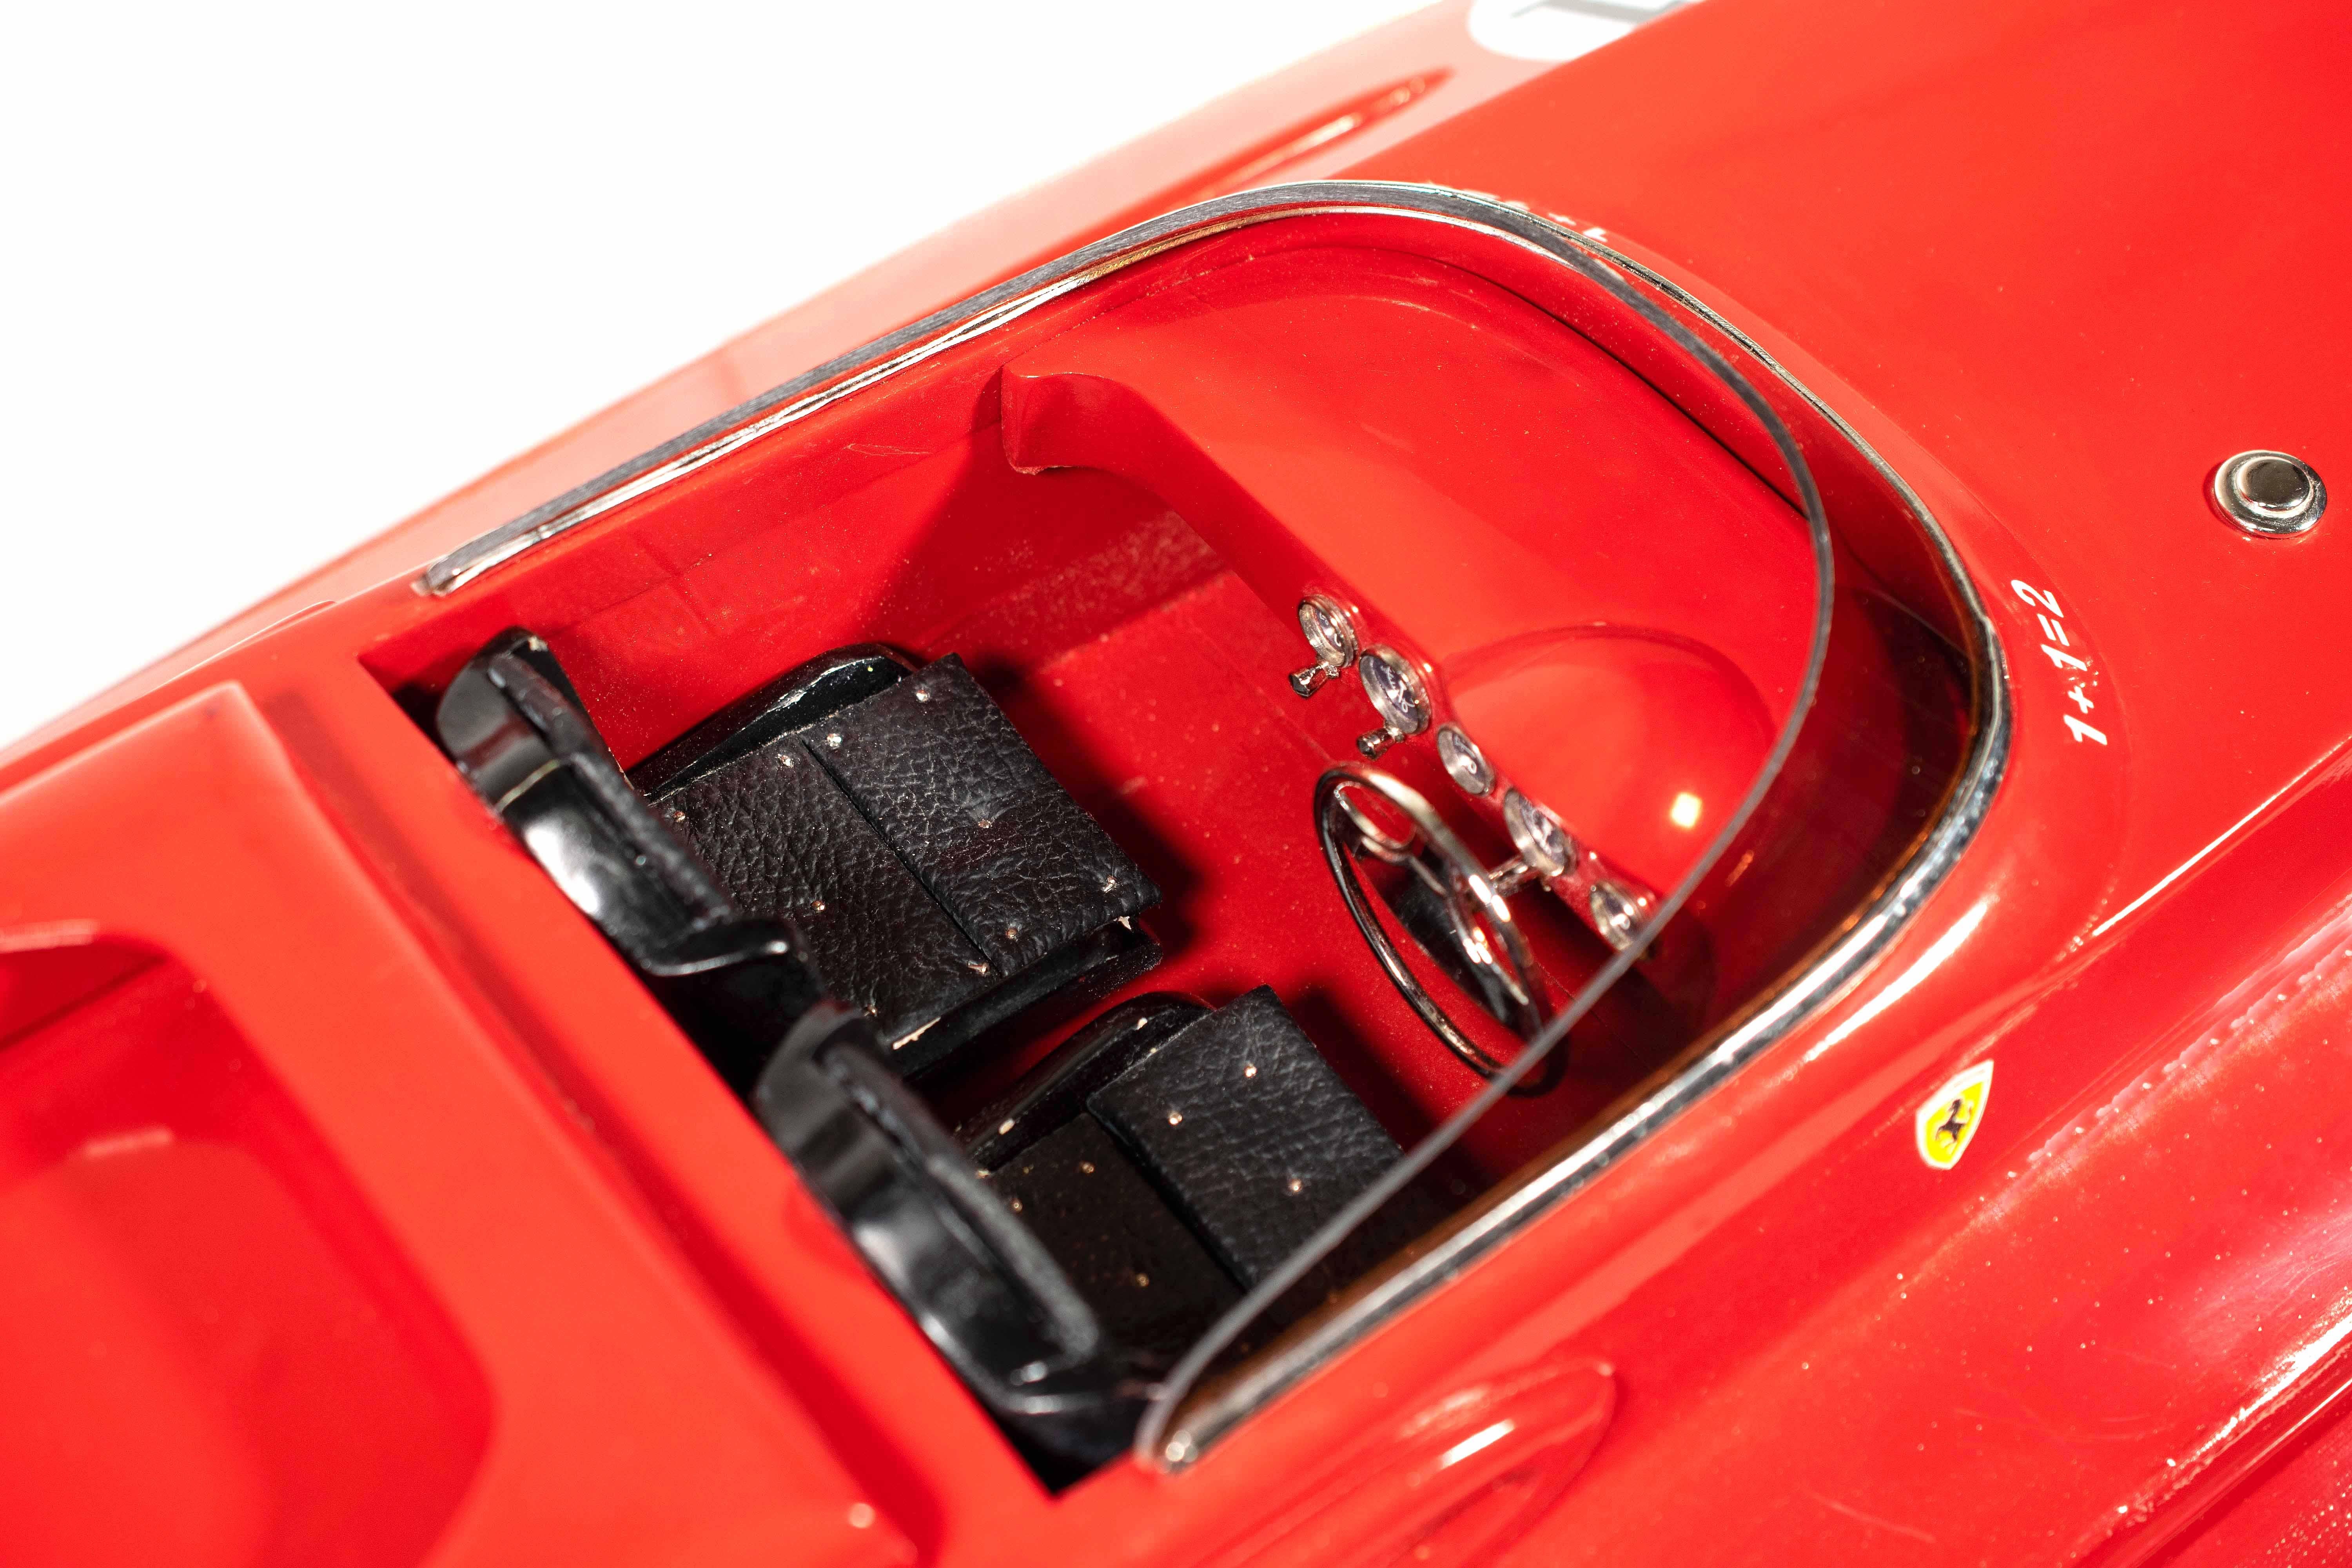 Le bateau à moteur de vitesse Ferrari Freccia Rossa est un objet décoratif vintage très rare fabriqué à la main en bois d'acajou, métal et cuir.

Modèle réduit de la vedette exclusive Ferrari à moteur F430.

Très bon état, à l'exception d'un